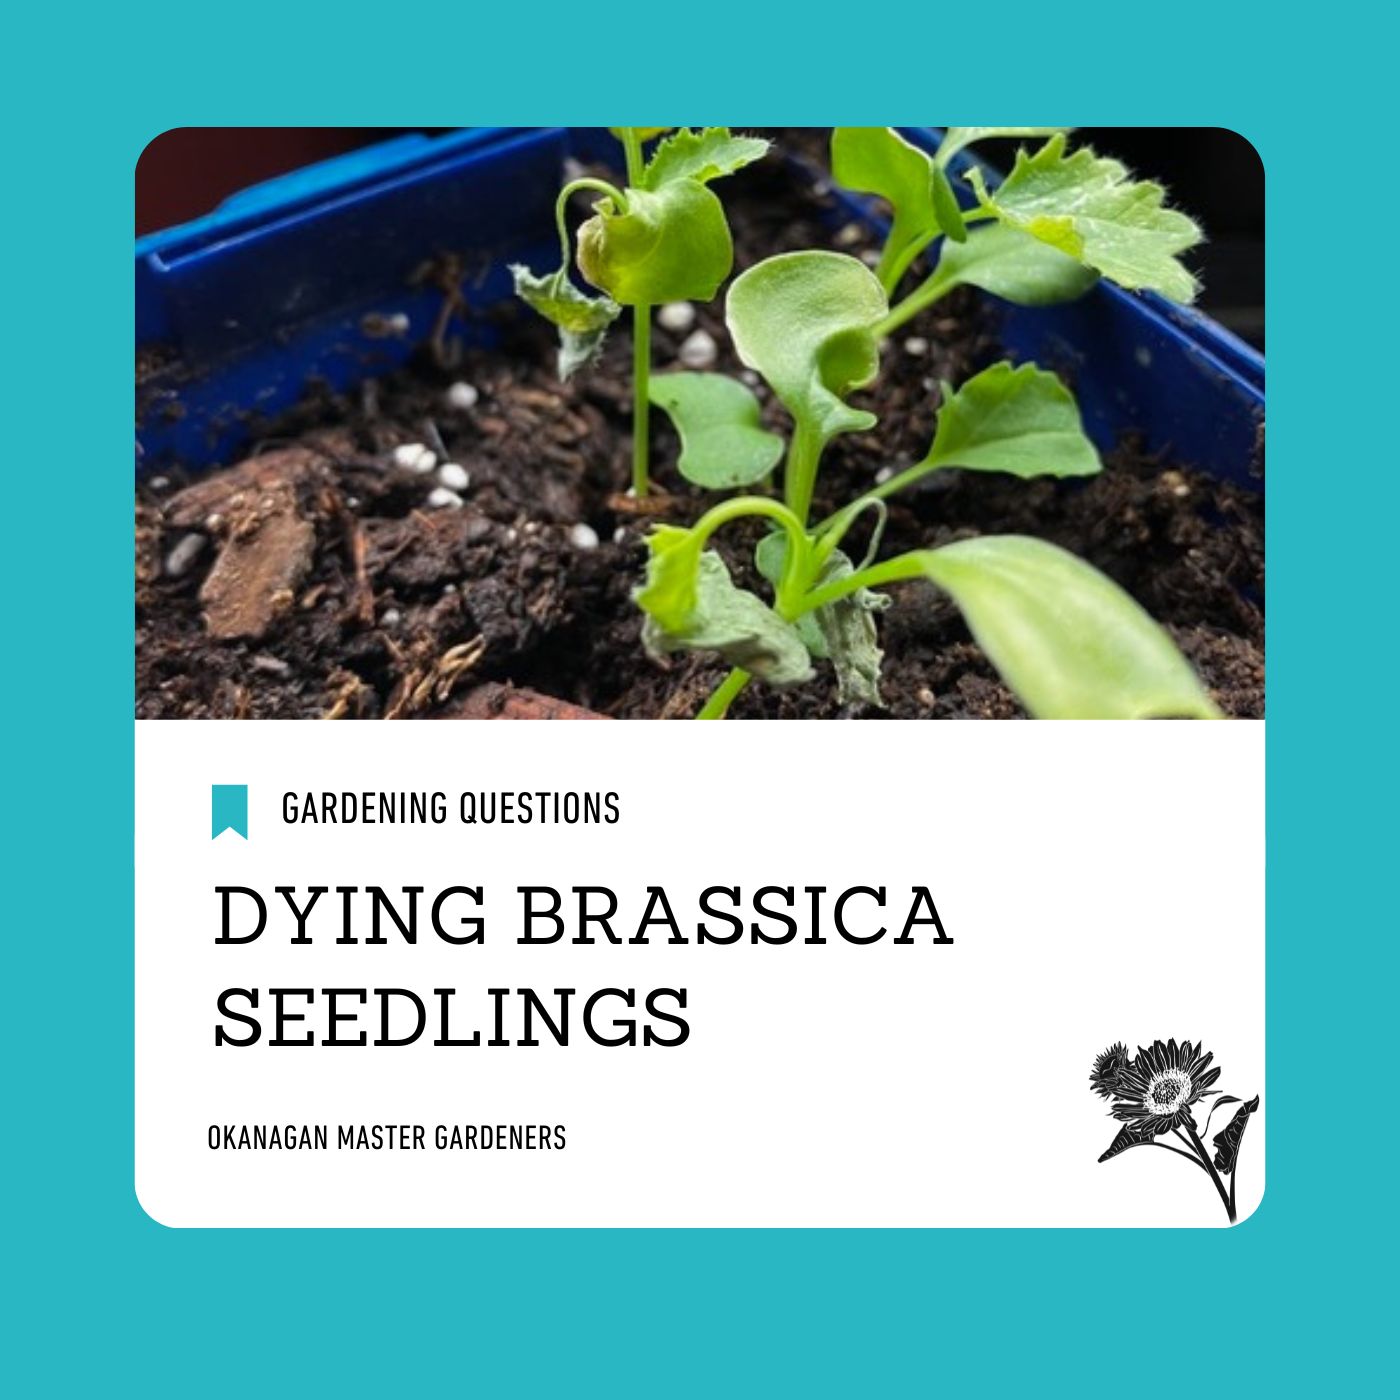 Dying brassica seedlings